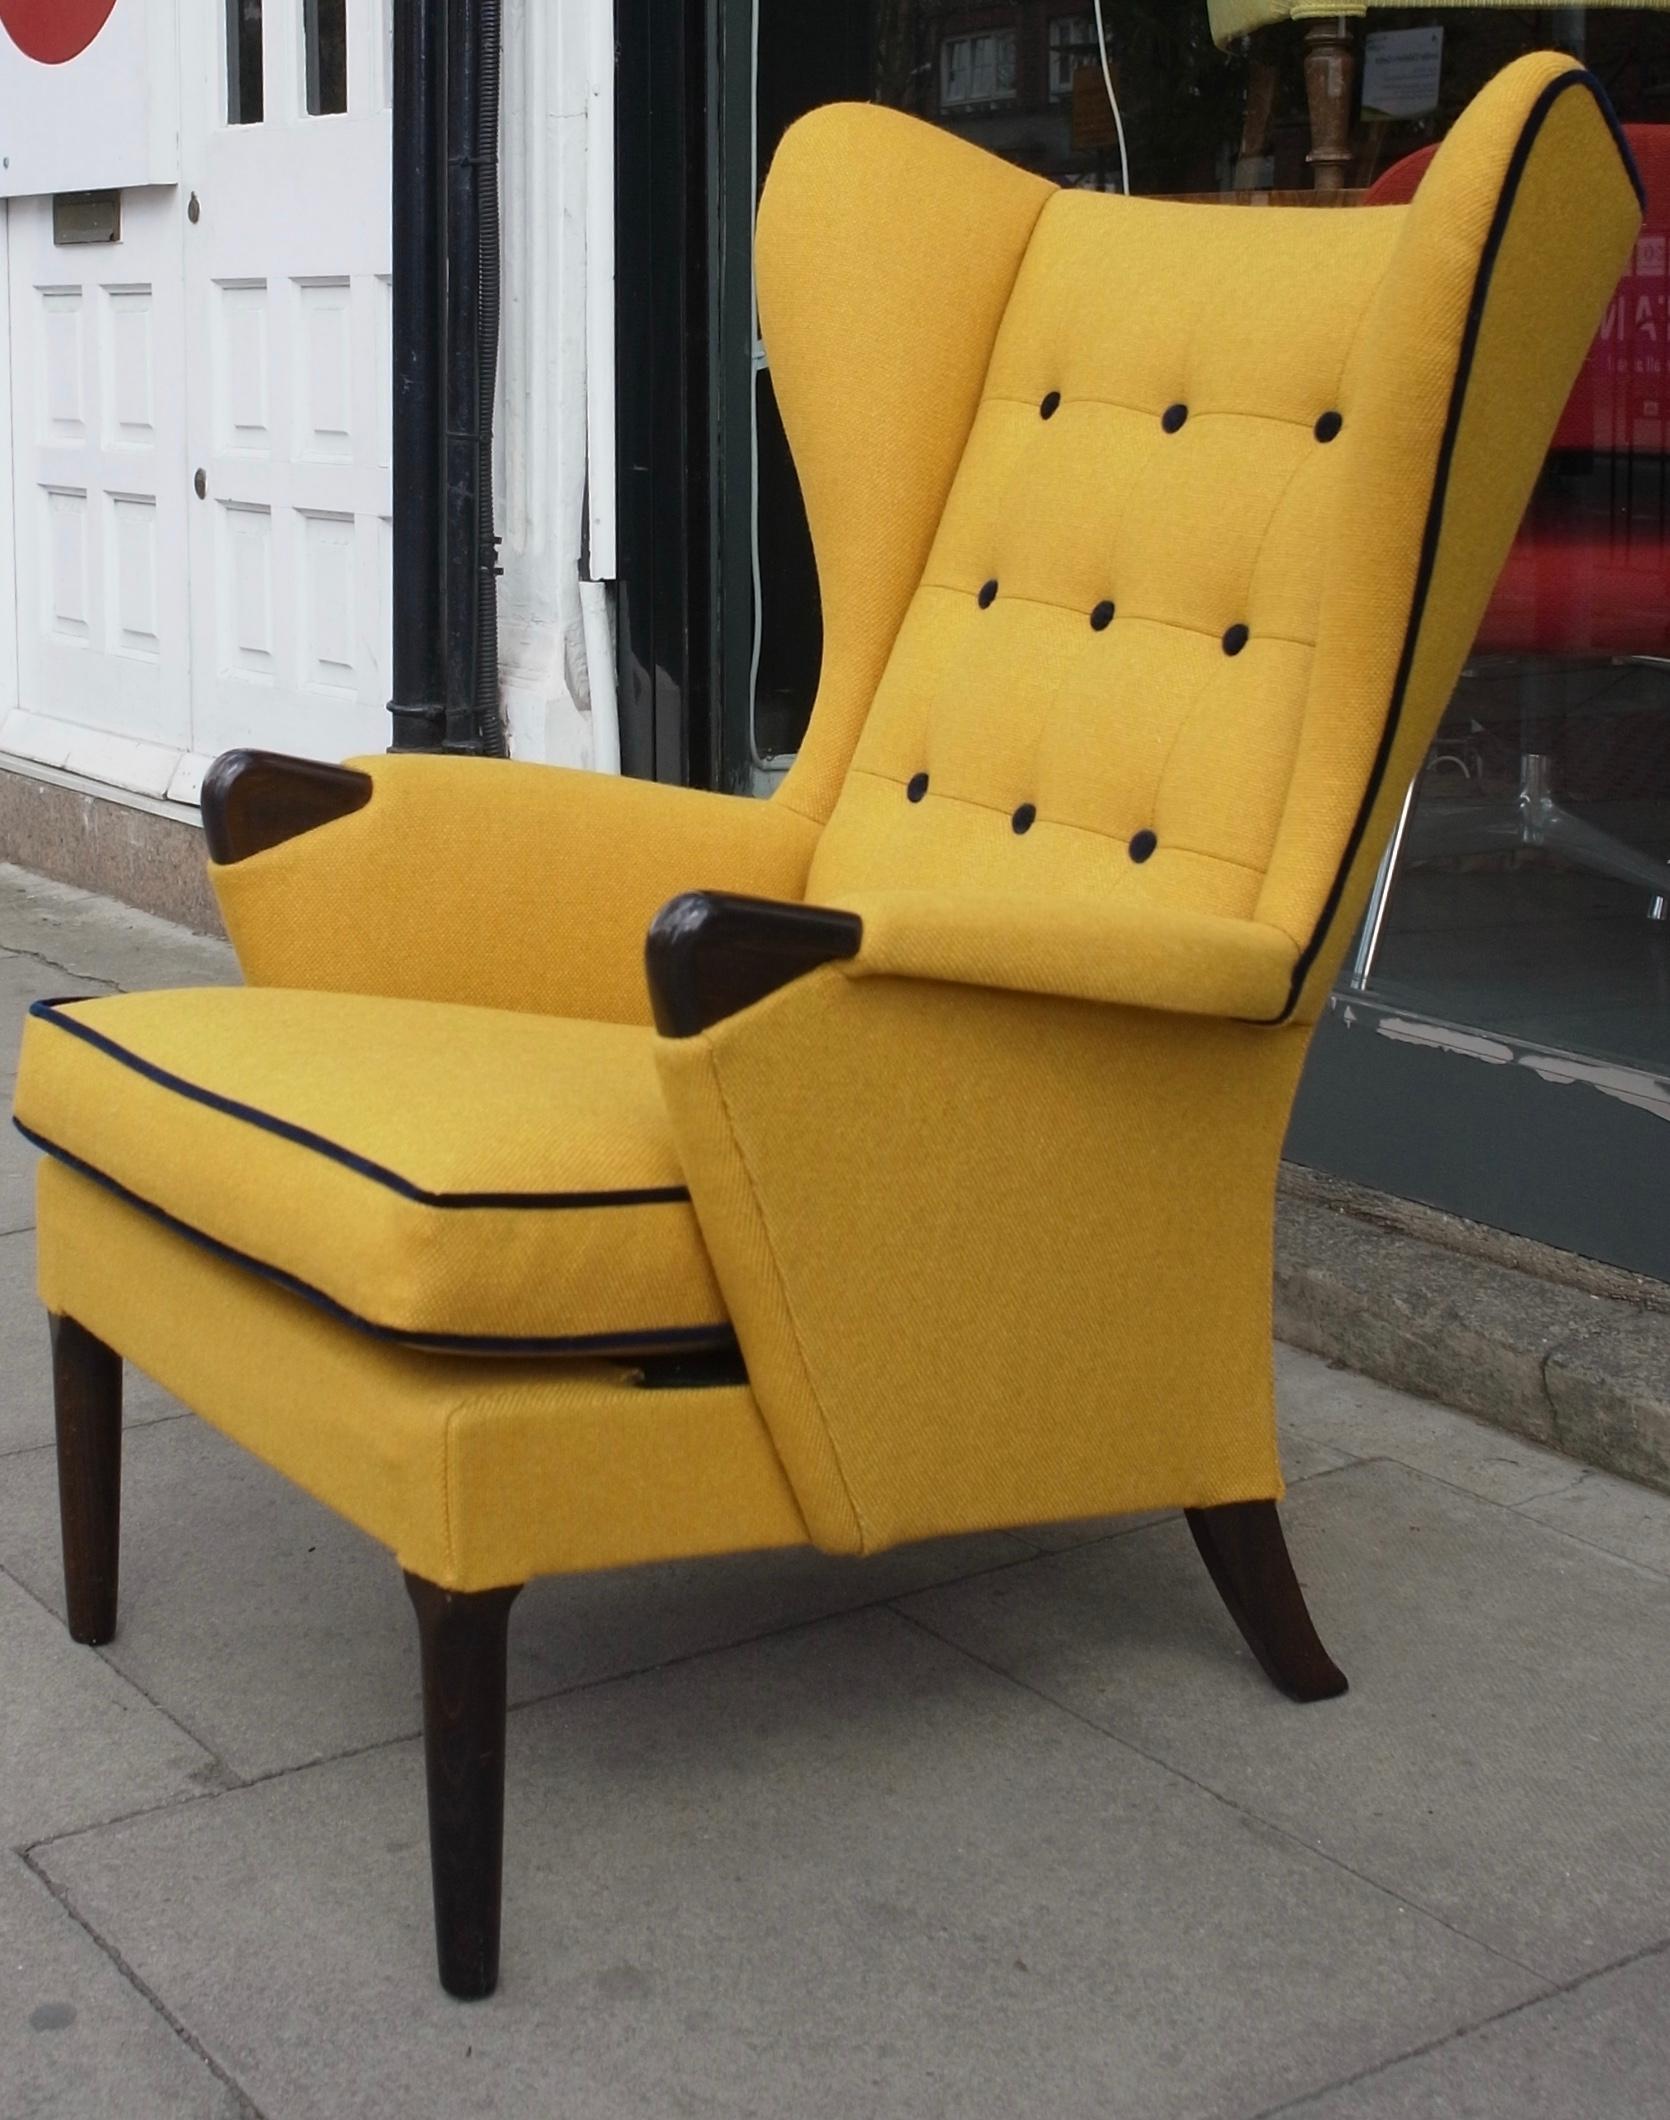 Ein sehr bequemer und stilvoller englischer Ohrensessel aus den 1950er Jahren mit Knöpfen.  Neu gepolstert in einem gelben Qualitätsstoff mit marinefarbenen Samtkedern und Knöpfen, die das elegante Profil des Stuhls betonen.  Die dunkel gefärbten